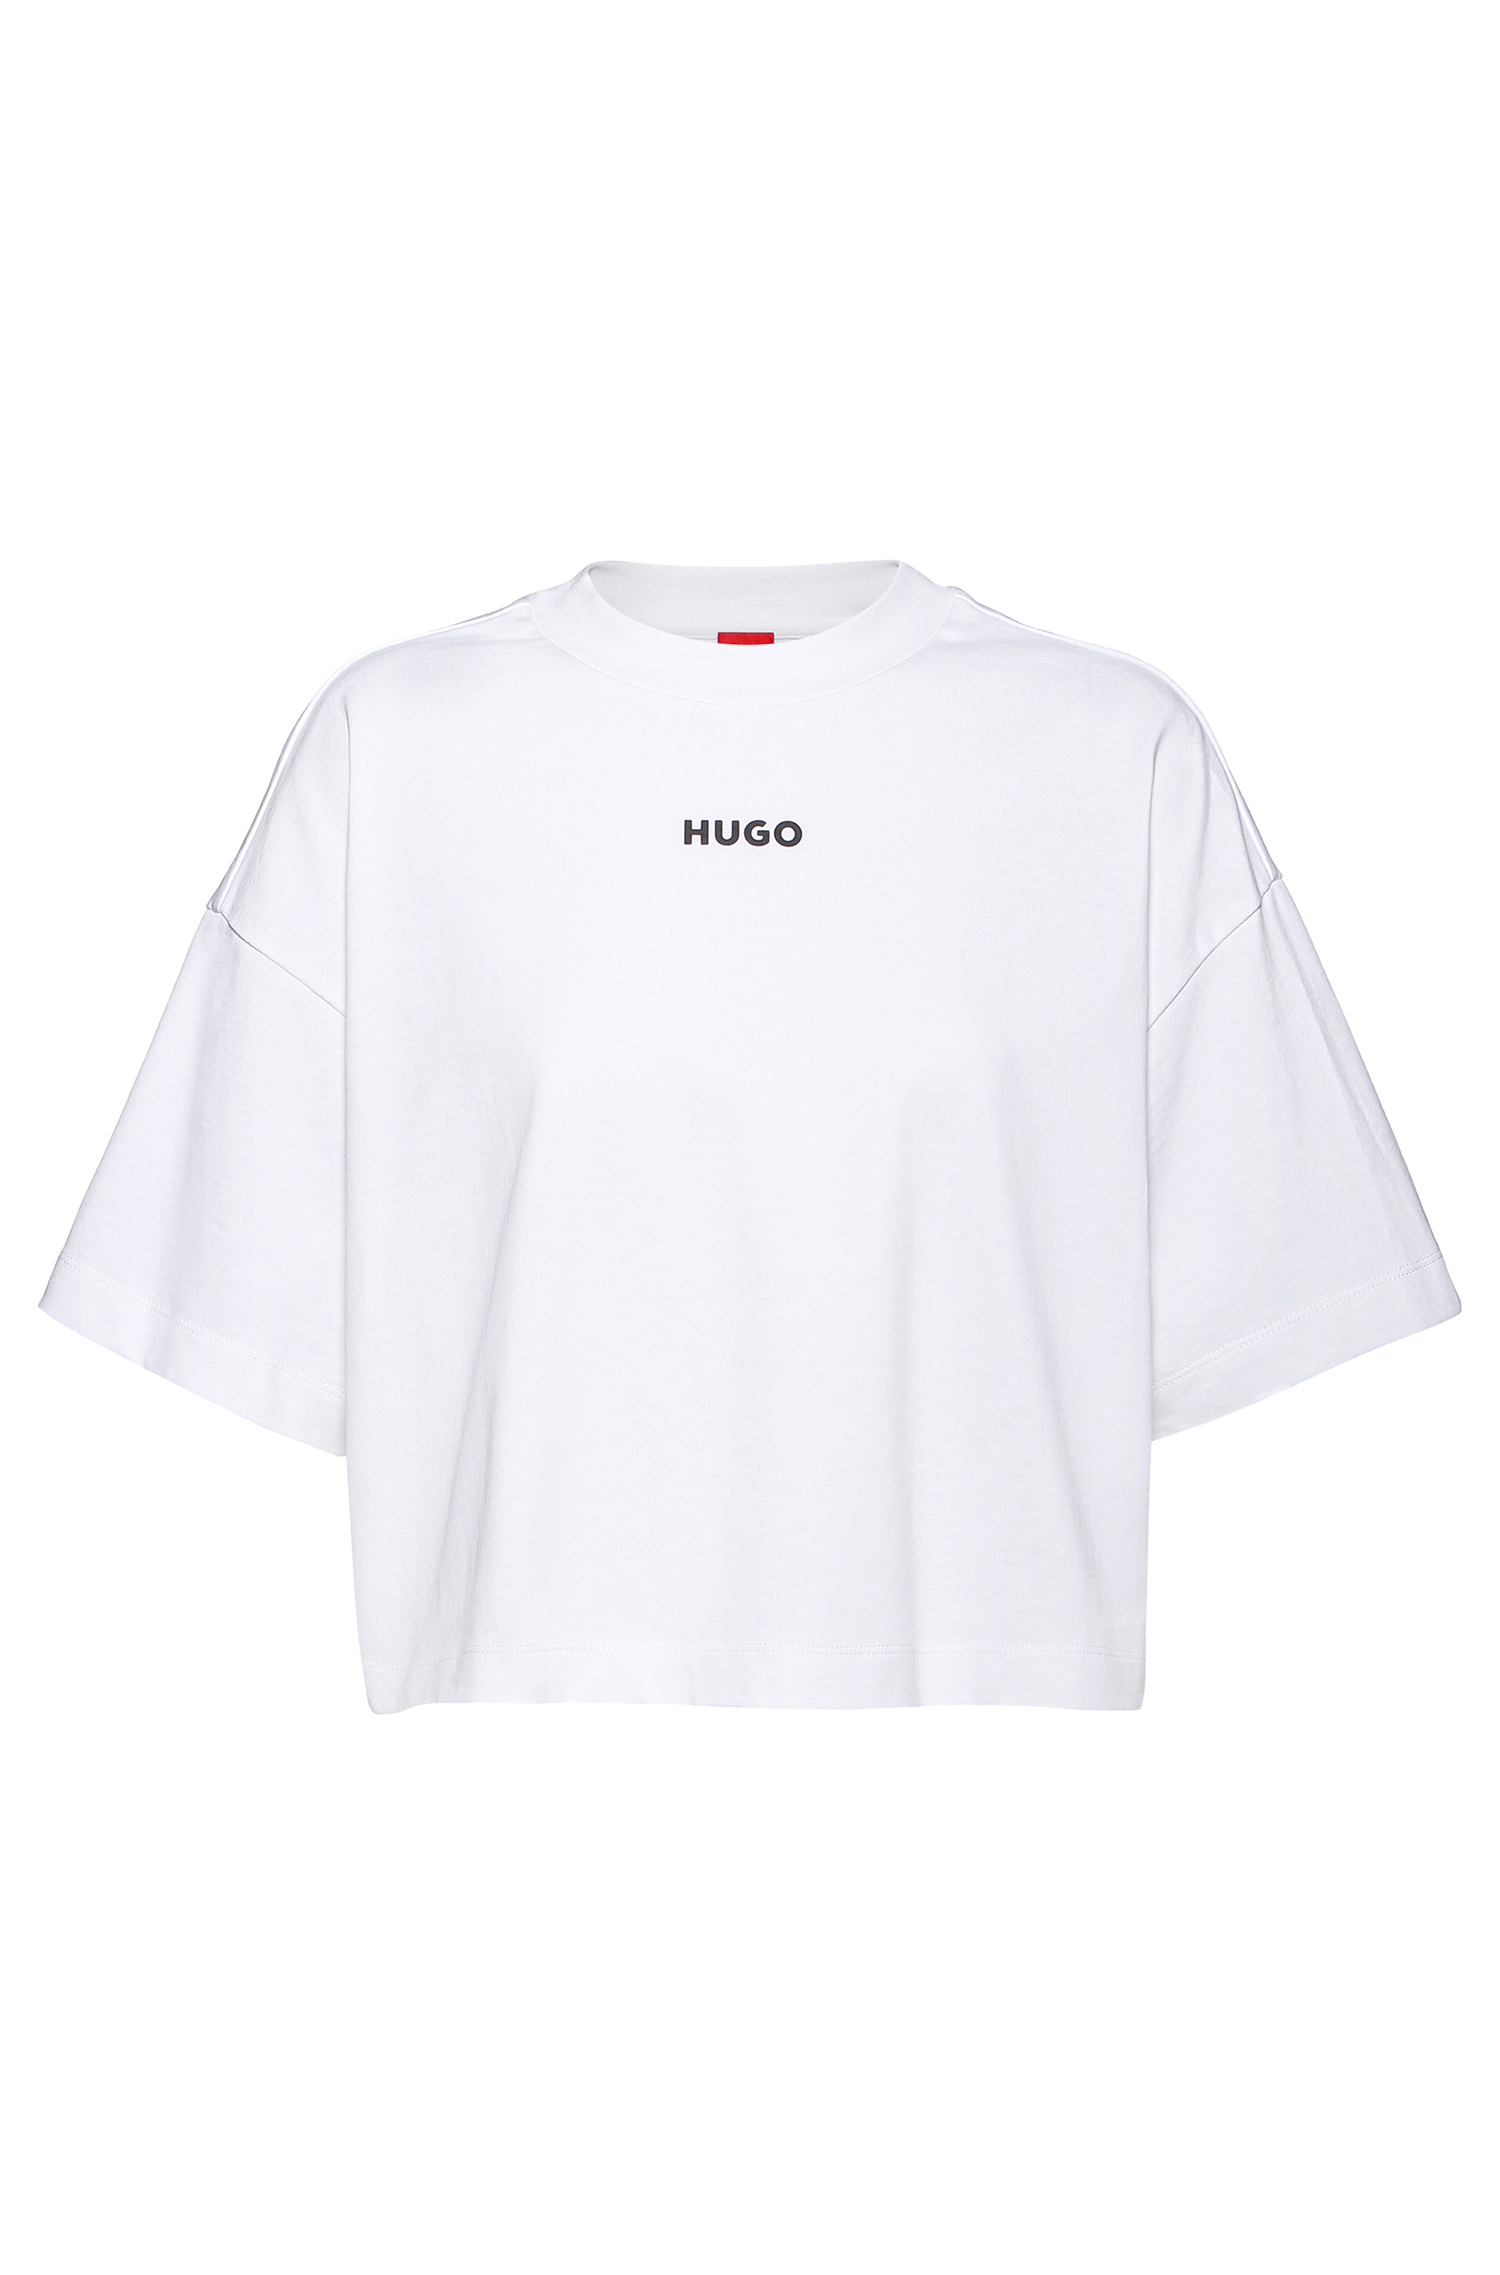 HUGO 50466554 Daylora 10223896 01 Damen T-Shirt mit Logo Cropped-Länge Weiß White 100